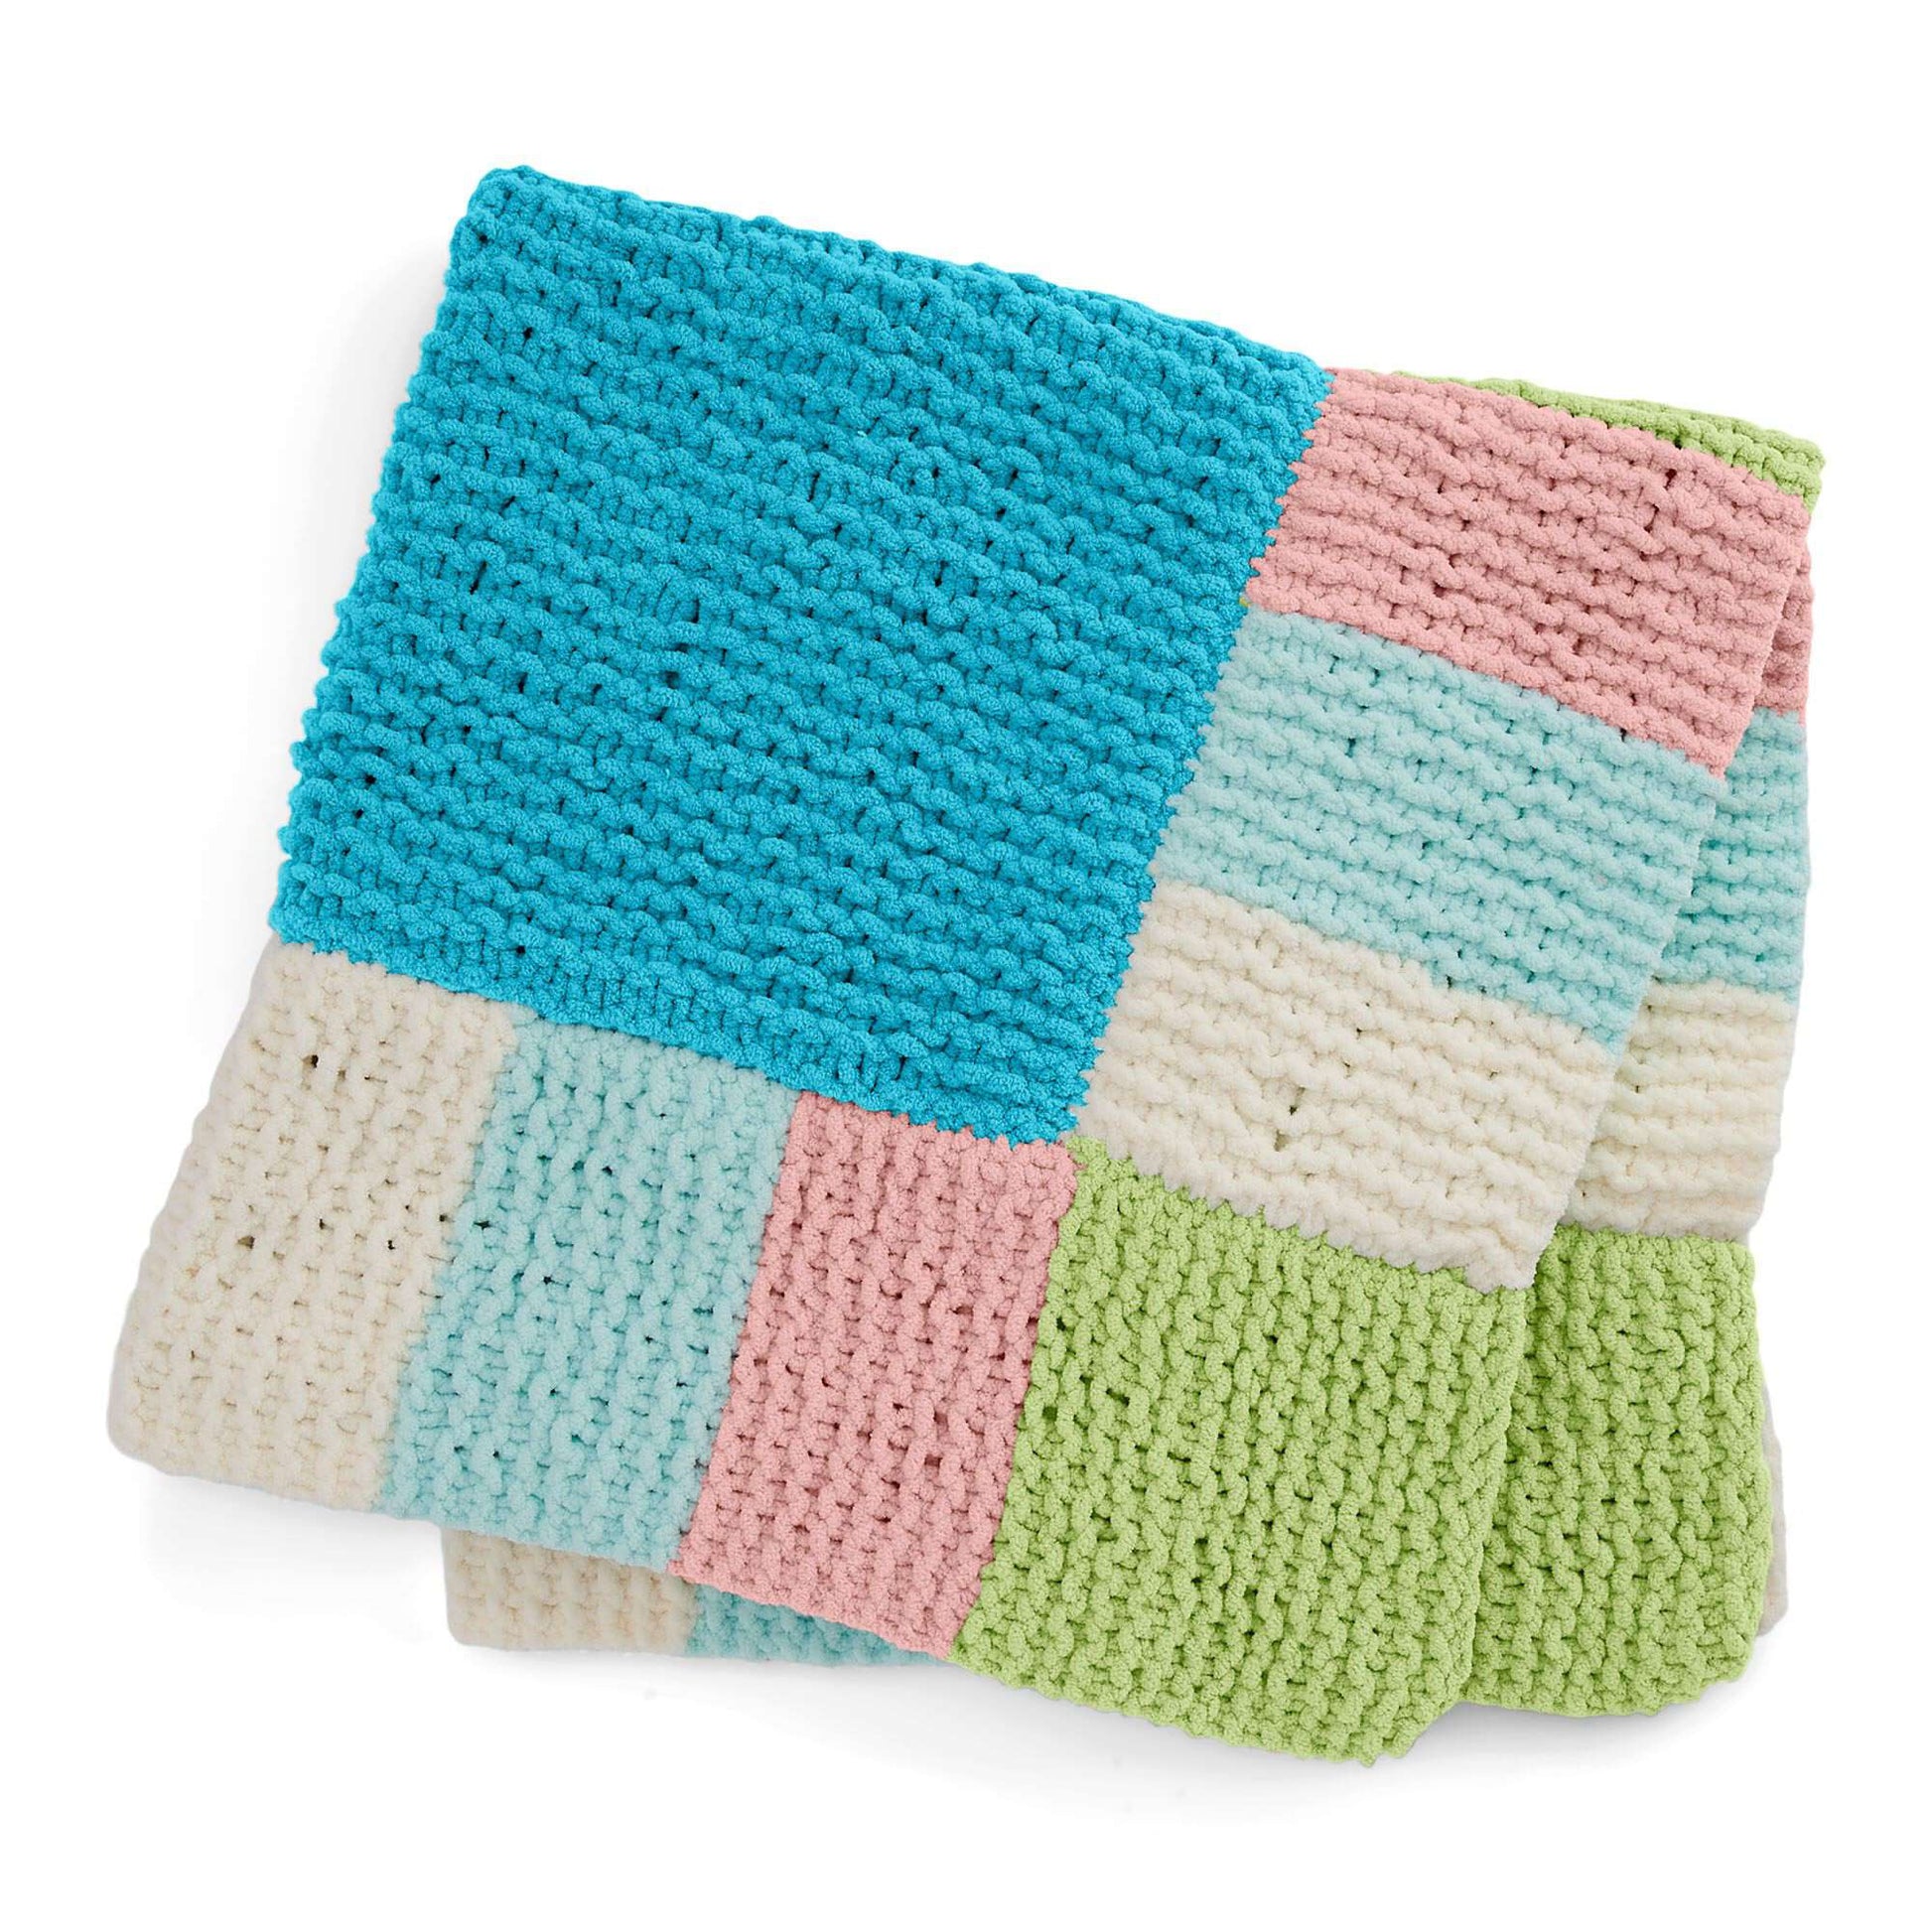 Free Bernat Checks & Rows Knit Blanket Pattern